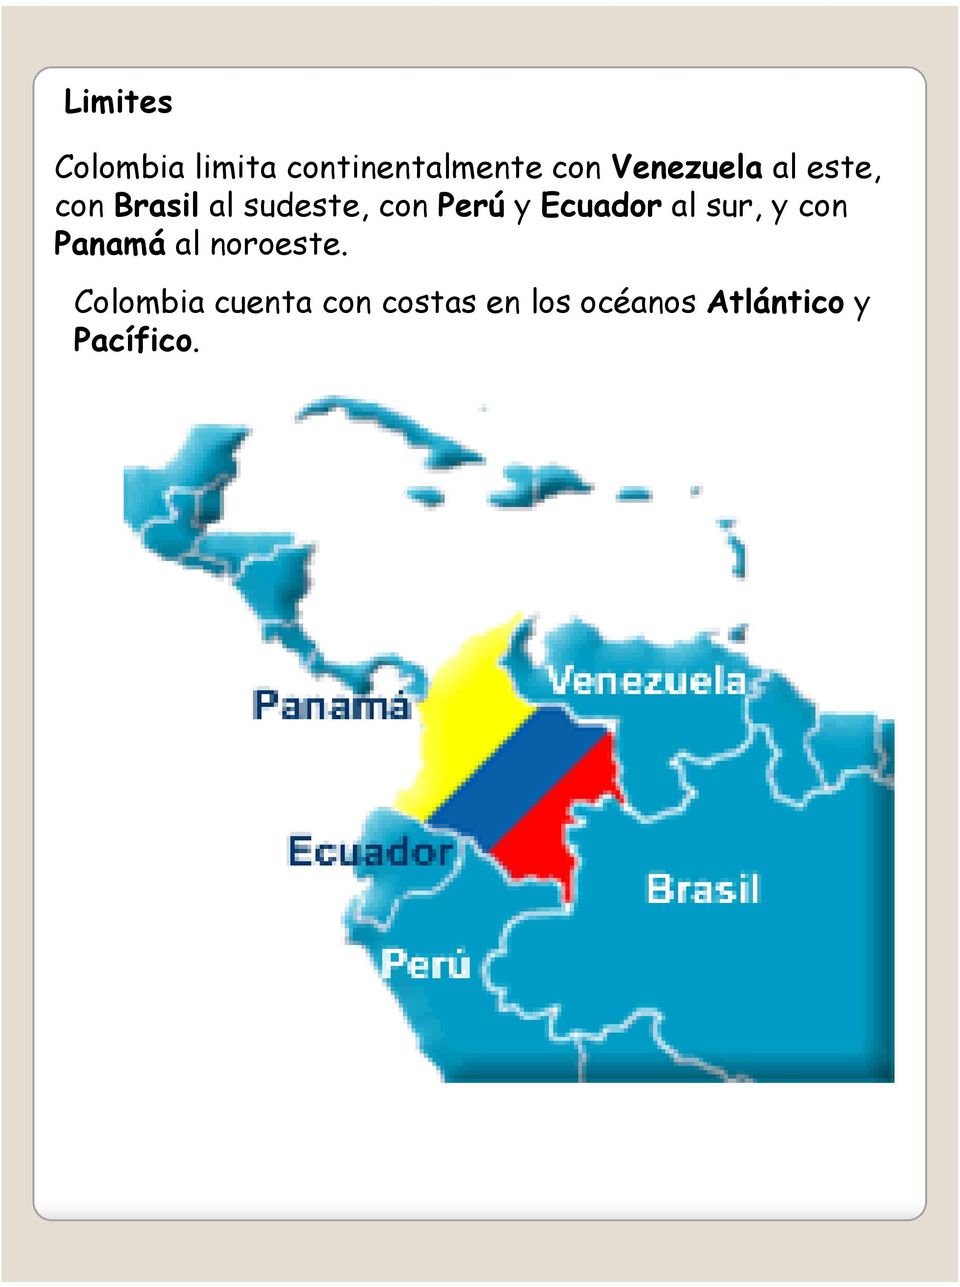 y Ecuador al sur, y con Panamá al noroeste.